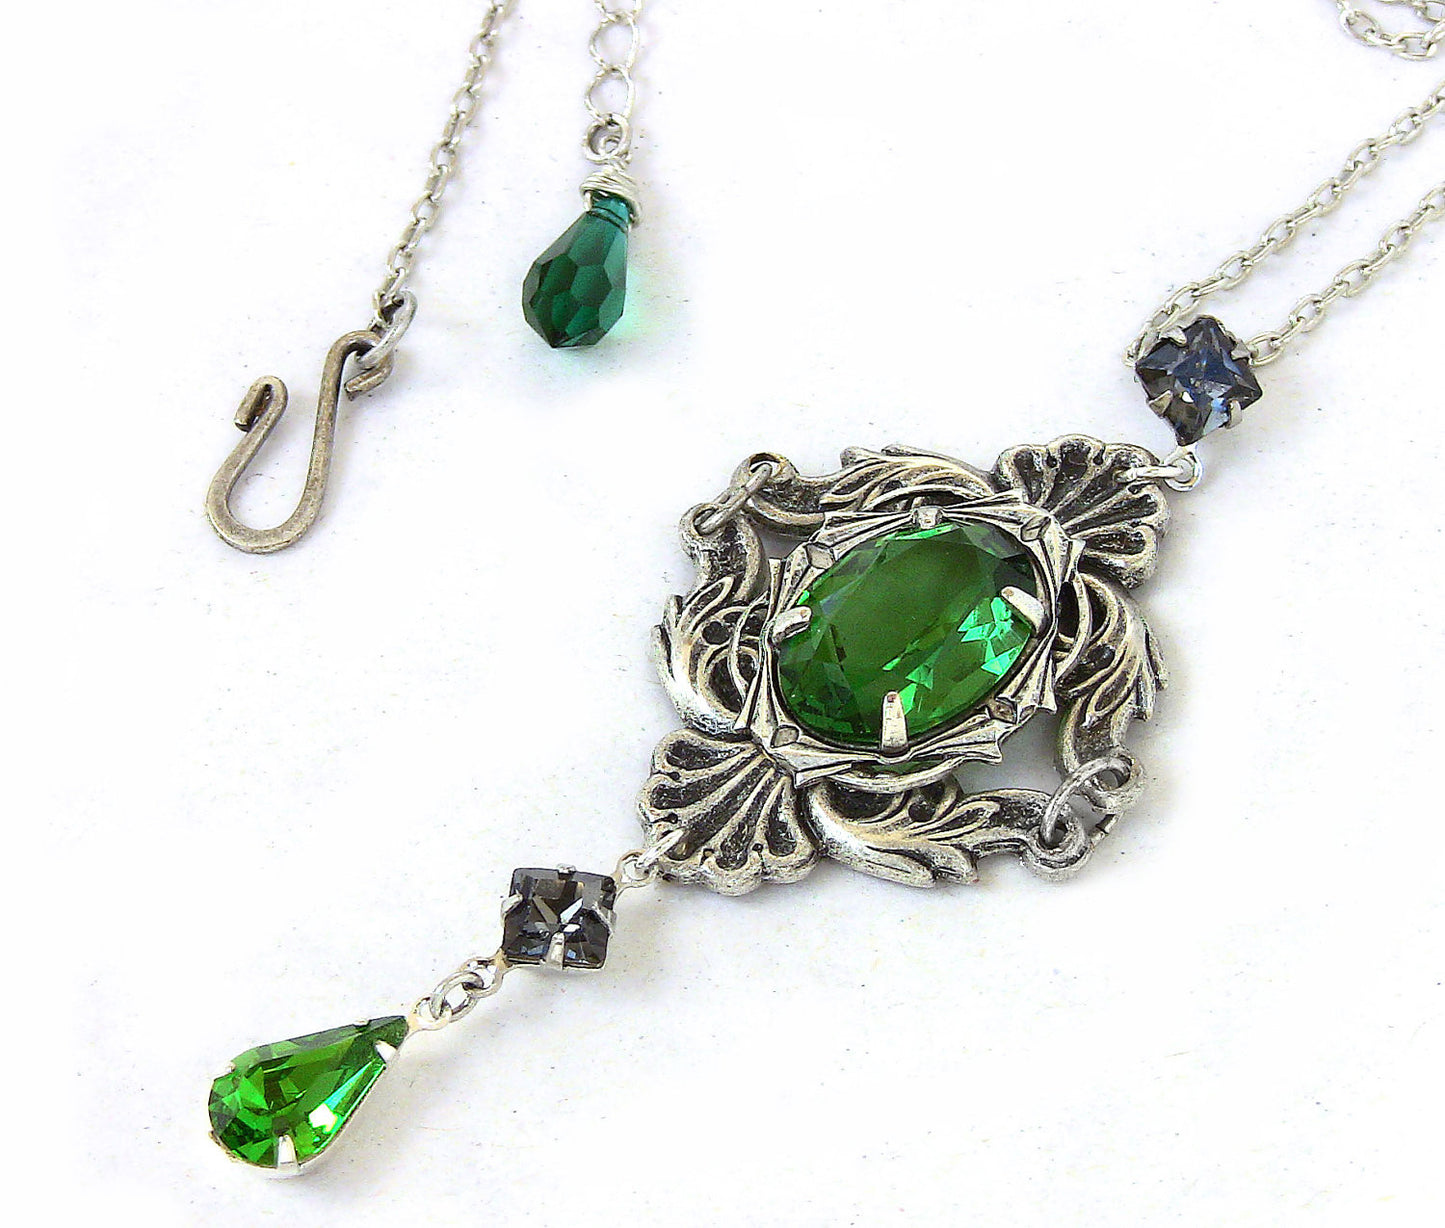 Green Gothic Necklace with Swarovski Crystal Rhinestones - Aranwen's Jewelry
 - 4